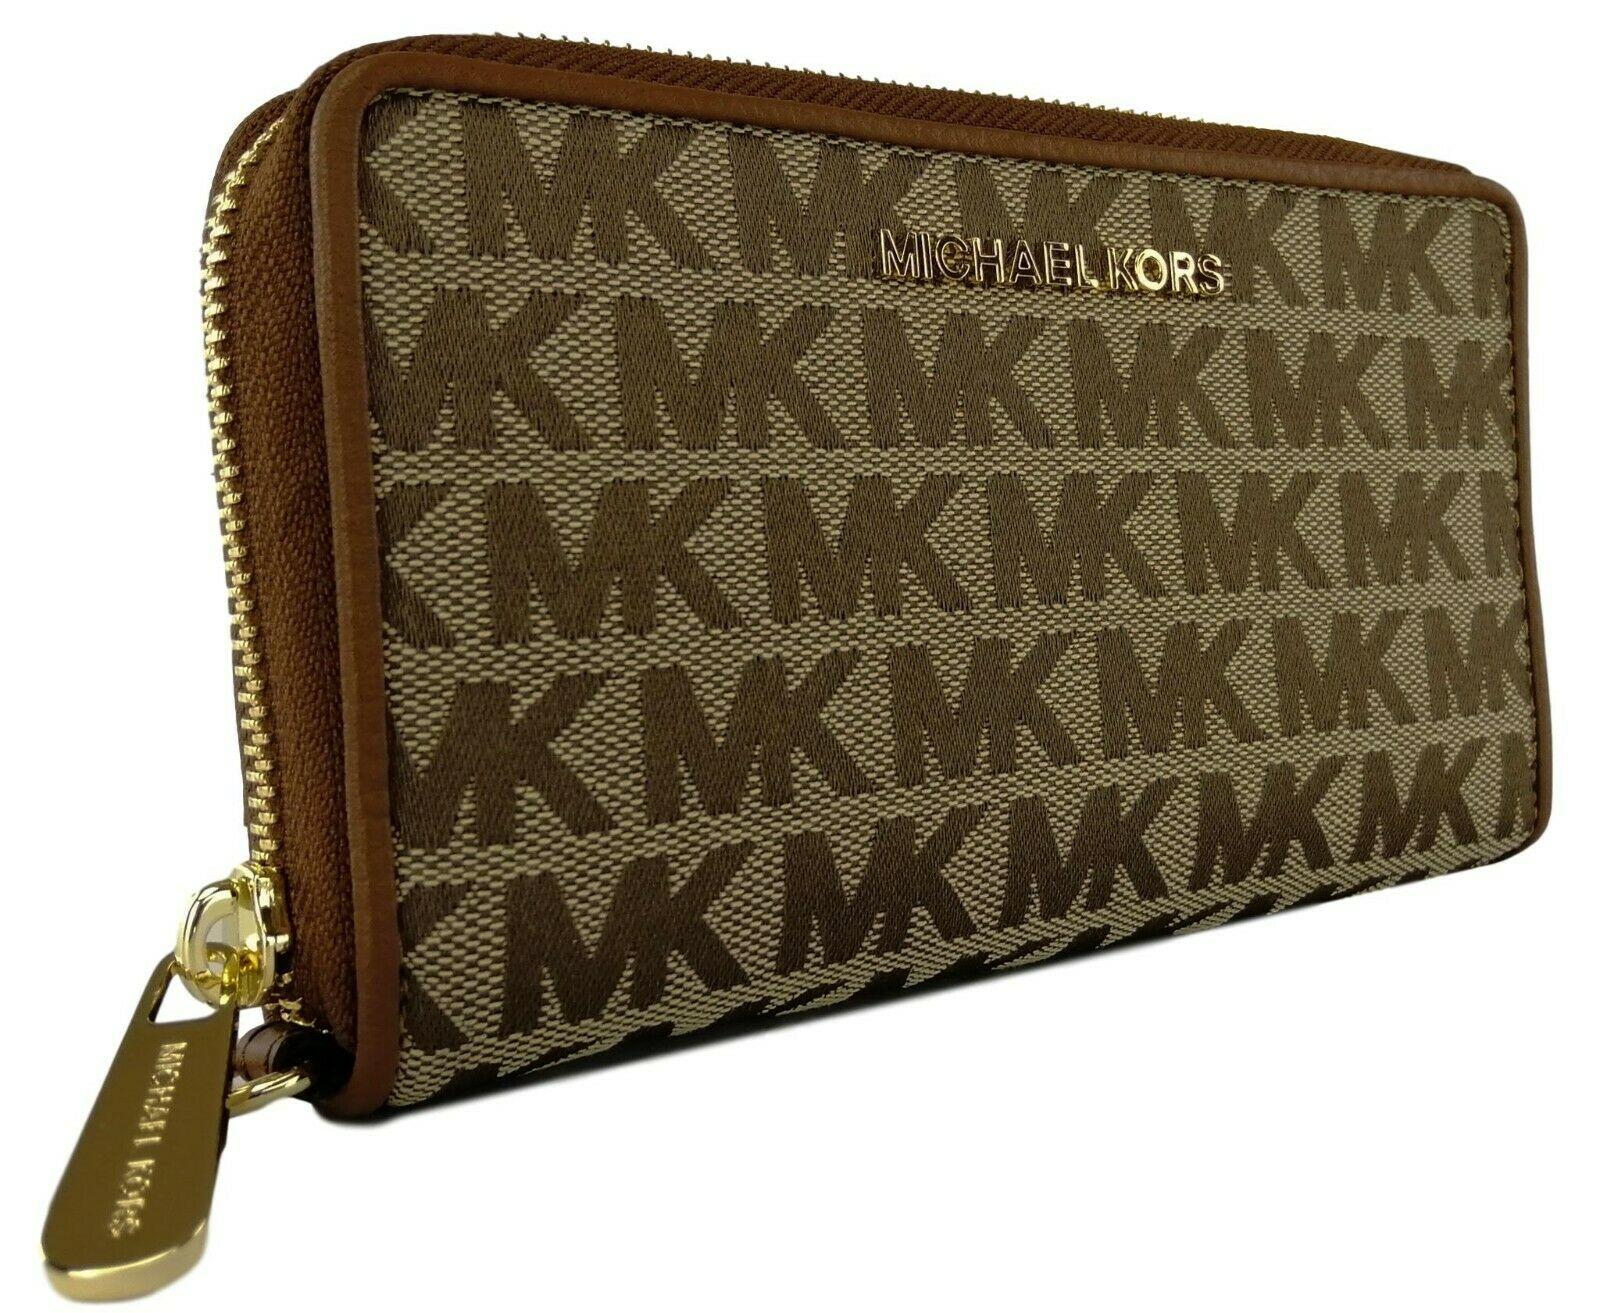 Michael Kors nude/tan Jet Set purse | Jet set, Michael kors, Kate spade top  handle bag